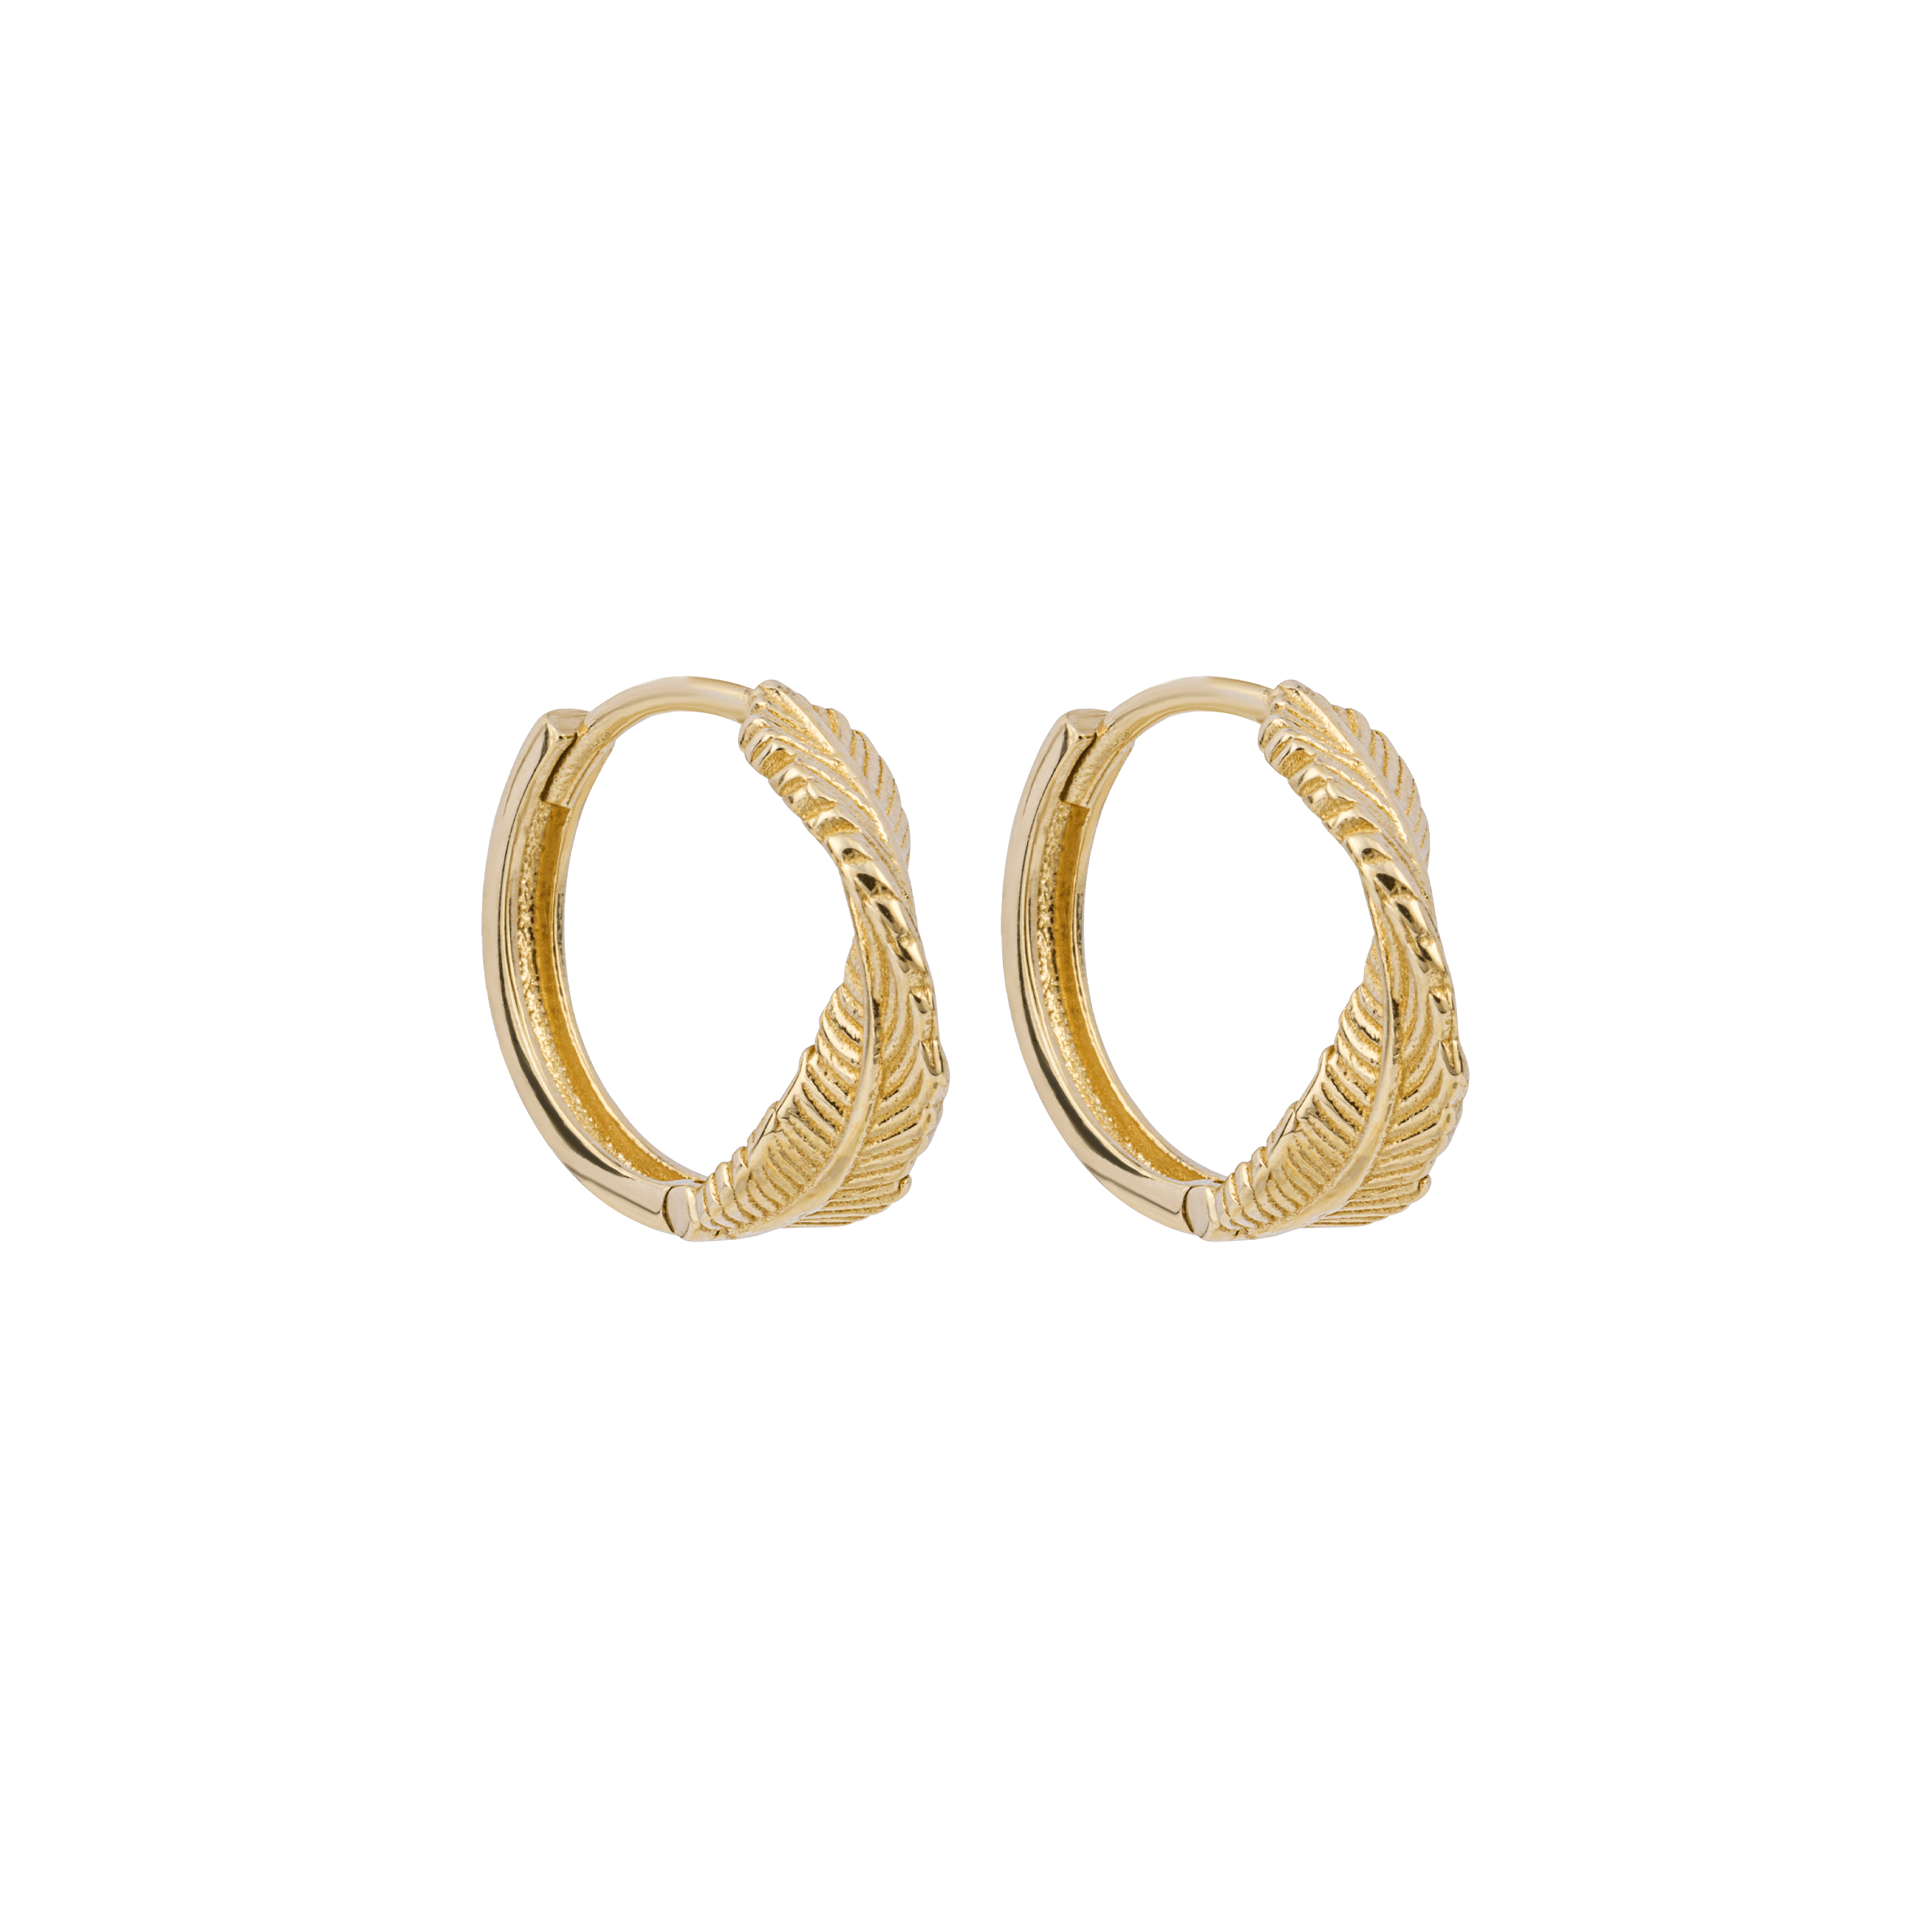 Leaf Twist Hoop Earrings in 9ct Yellow Gold - Robert Anthony Jewellers, Edinburgh